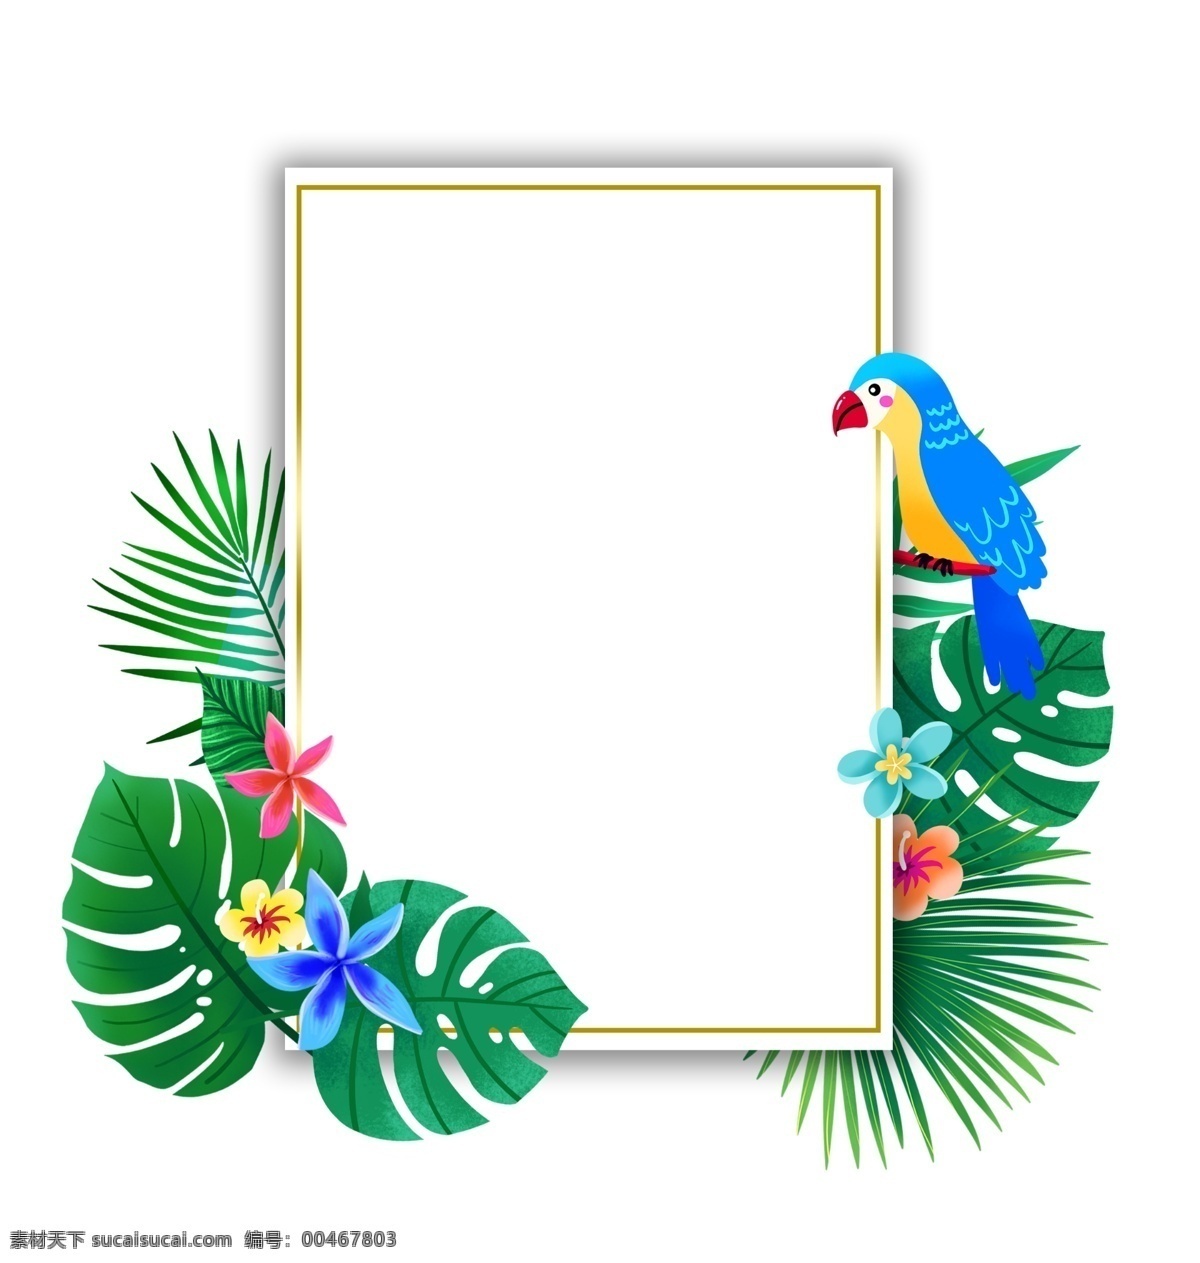 夏季 热带 植物 鹦鹉 边框 夏天 春夏 花朵 度假 叶子 绿色 蓝色鹦鹉 龟背叶